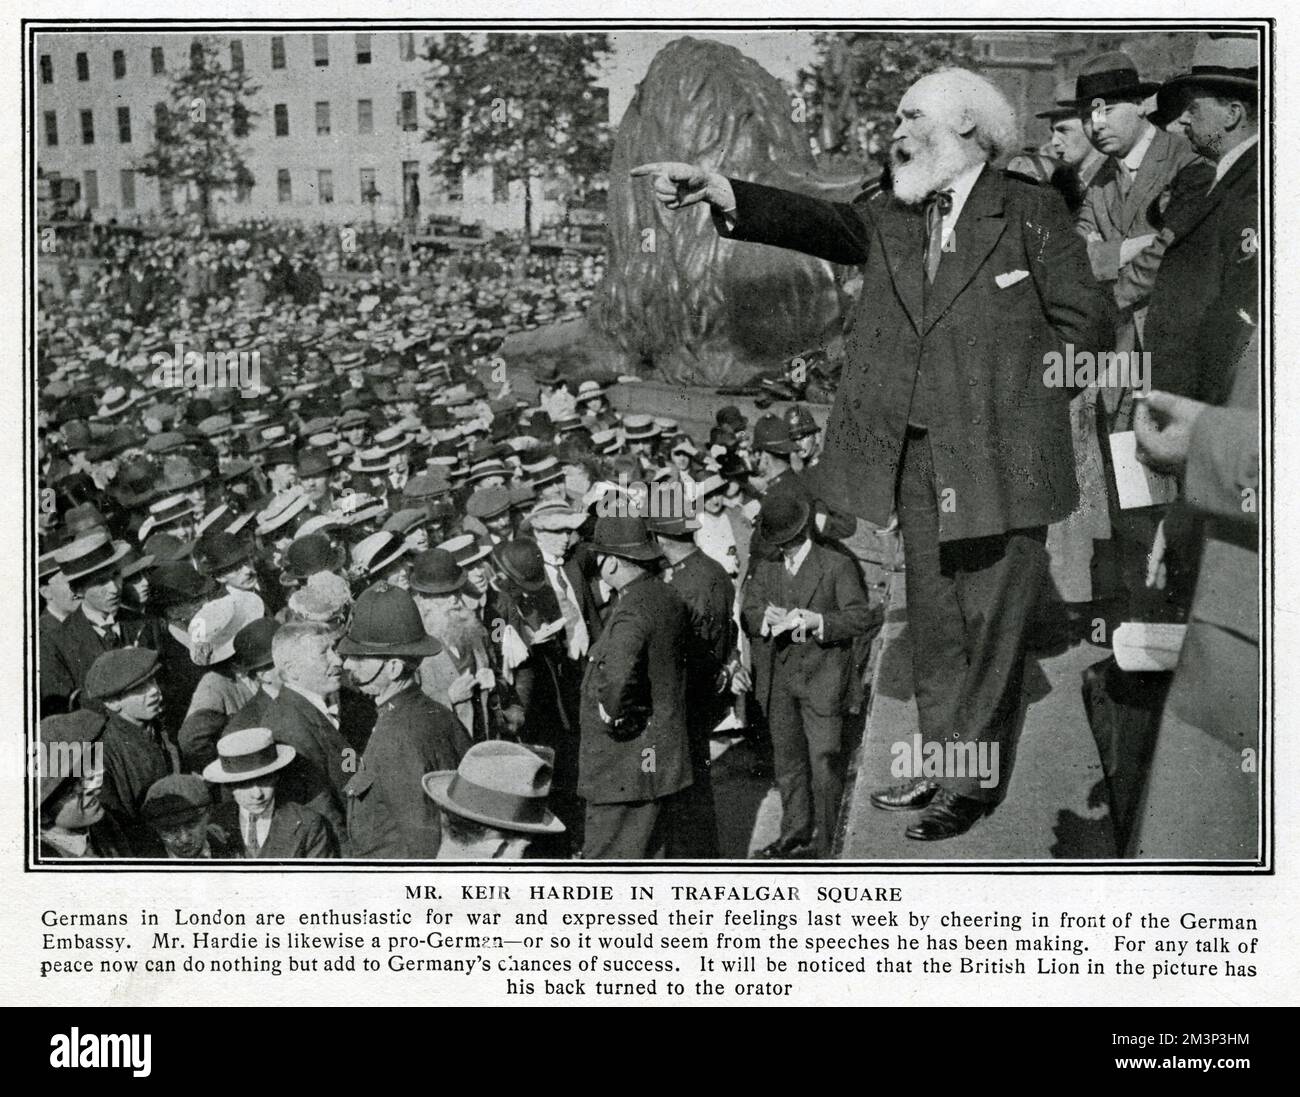 James Keir Hardie (1856-1915), politico socialista scozzese e leader laburista, che parla con una folla di persone a Trafalgar Square, Londra, sullo scoppio della prima guerra mondiale. Data: Agosto 1914 Foto Stock